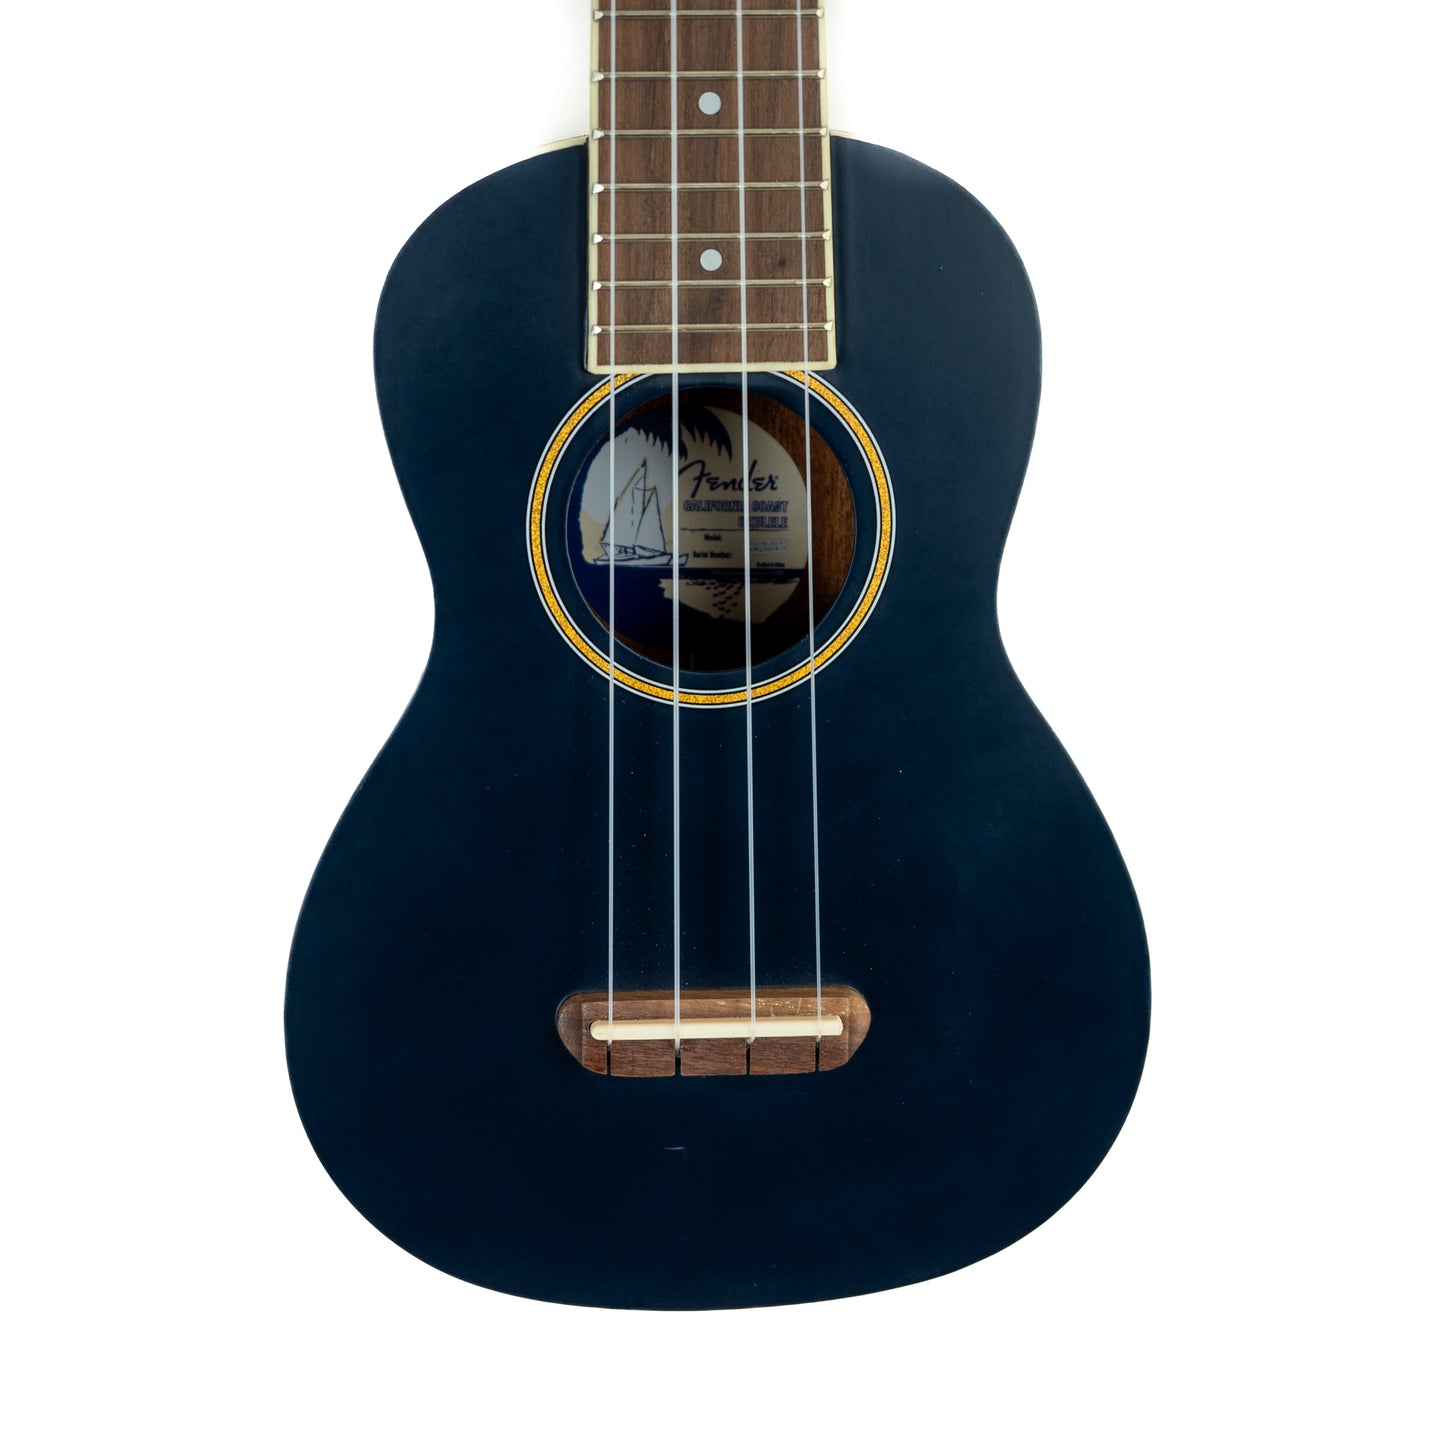 Fender Grace VanderWaal "Moonlight" soprano ukulele with gigbag accessory bundle.